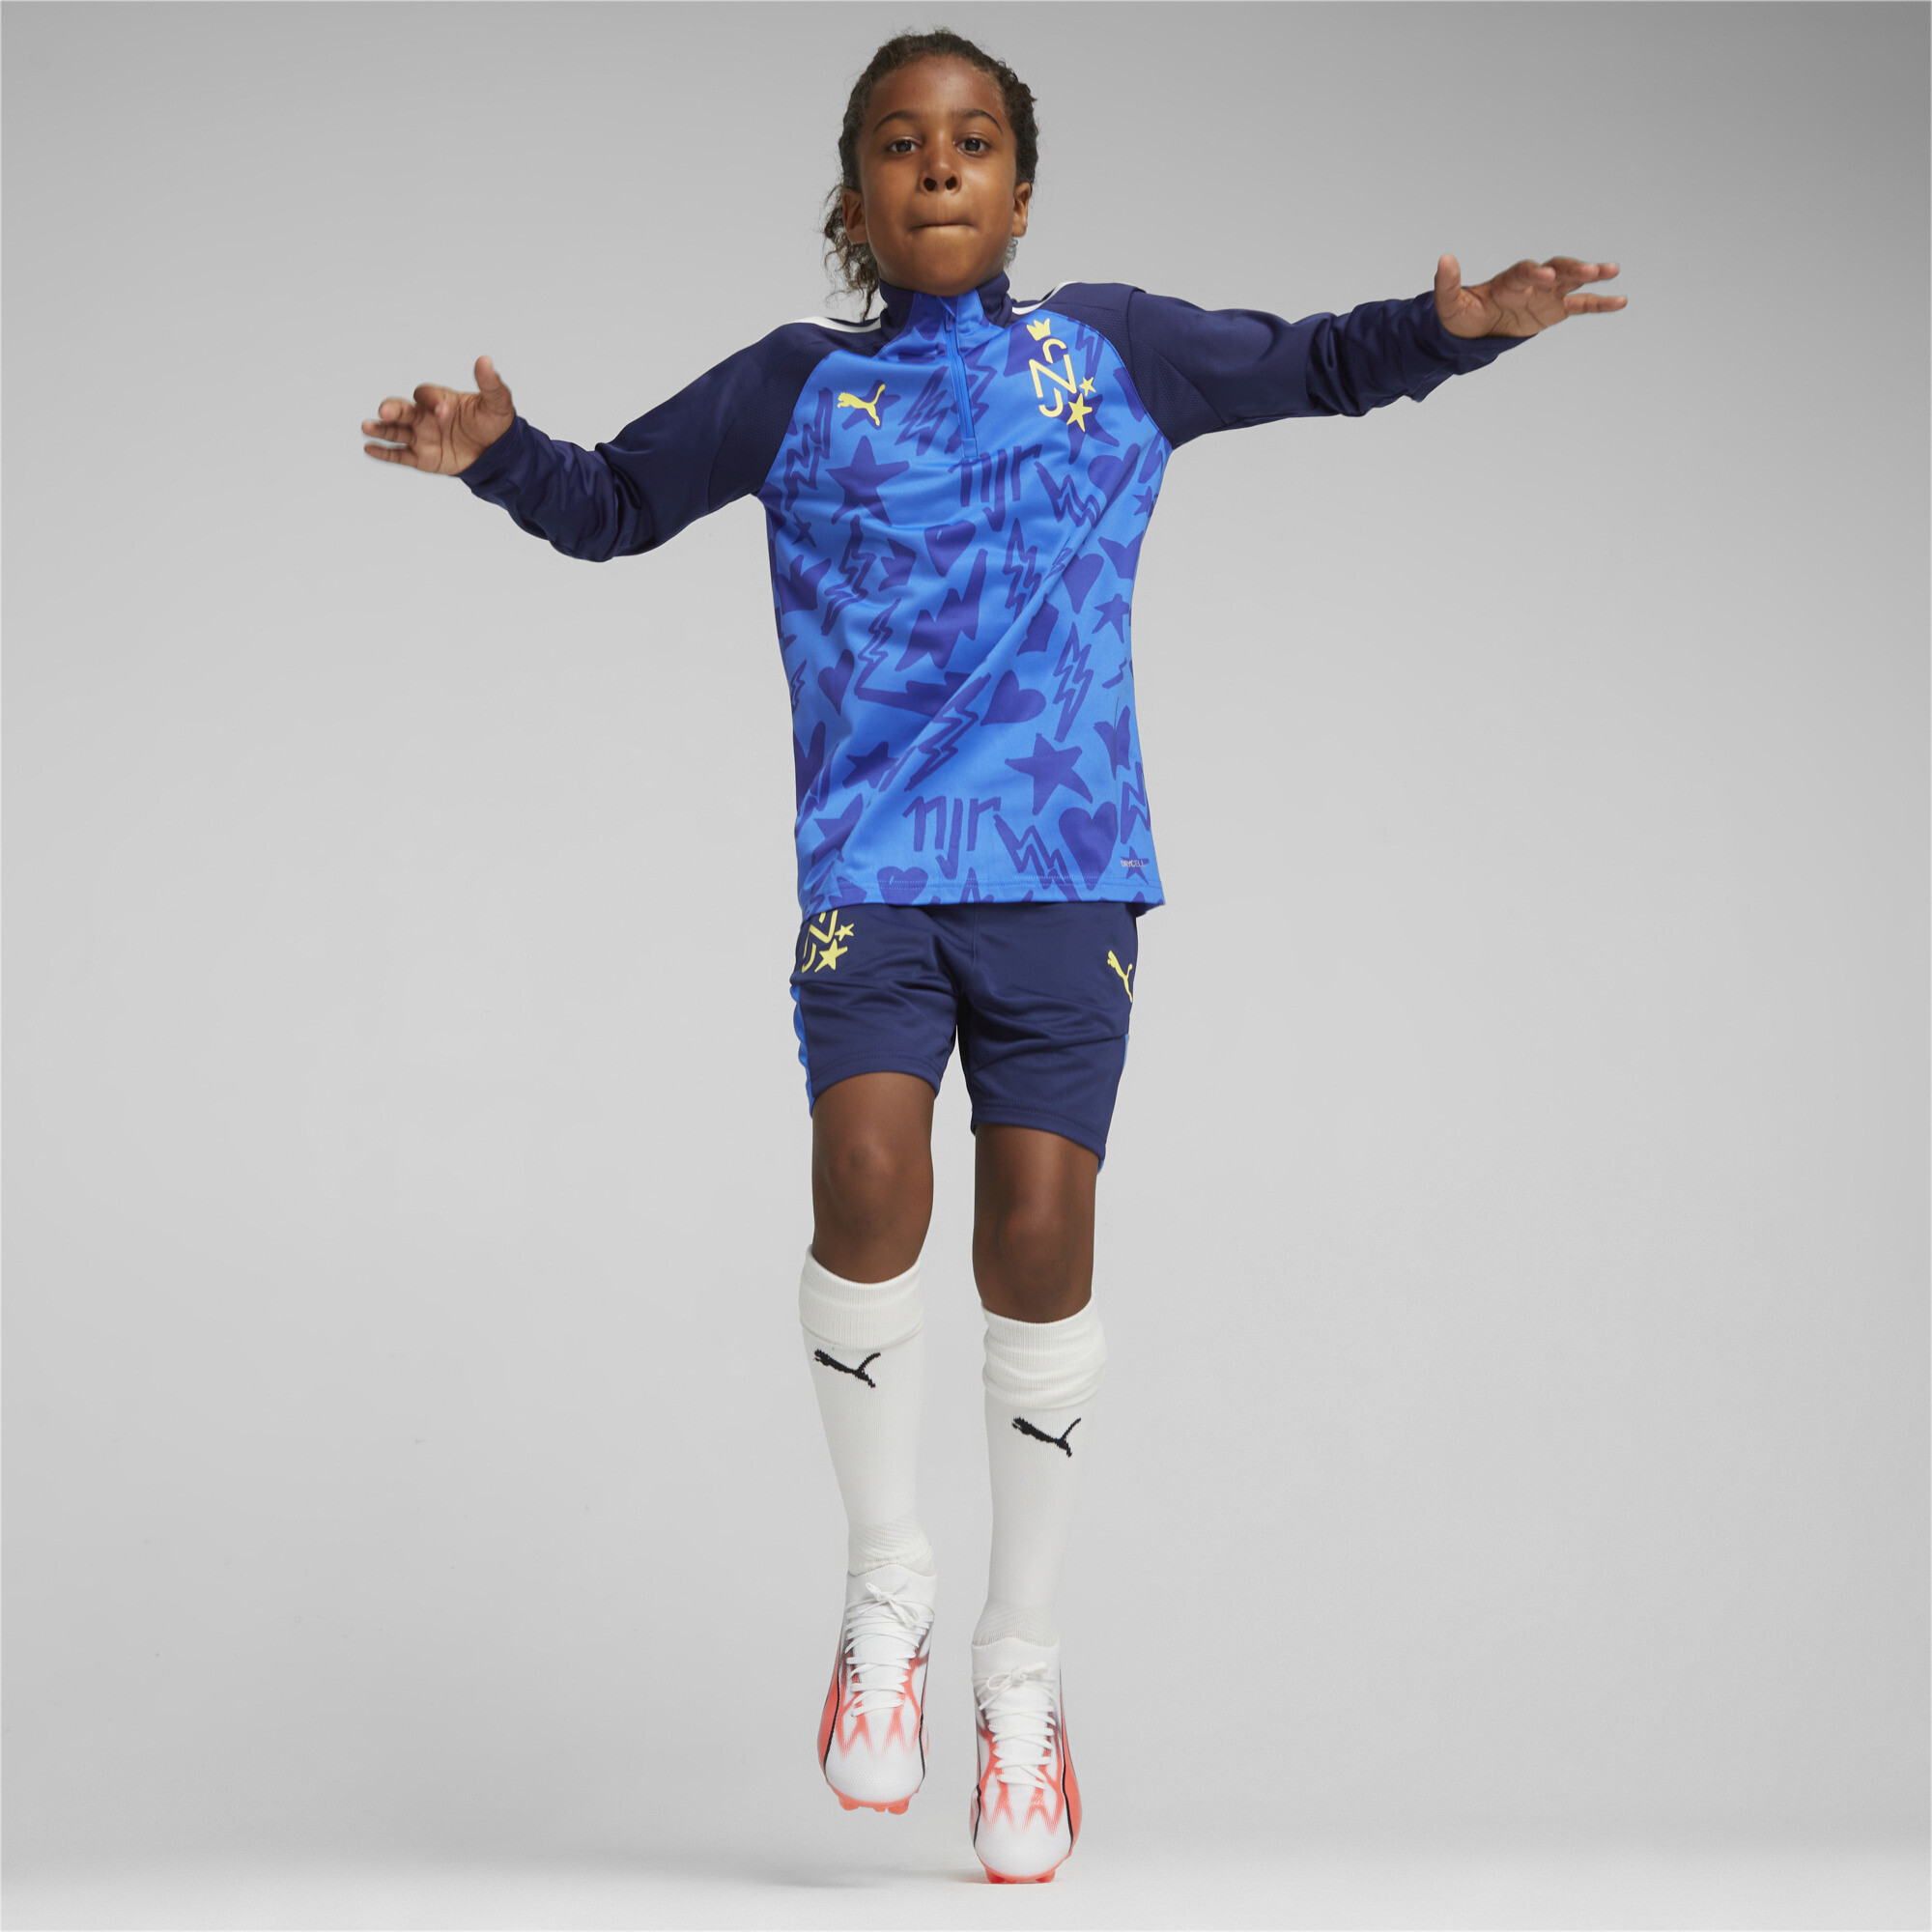 PUMA Neymar Jr Football Track Jacket In Blue, Size 11-12 Youth